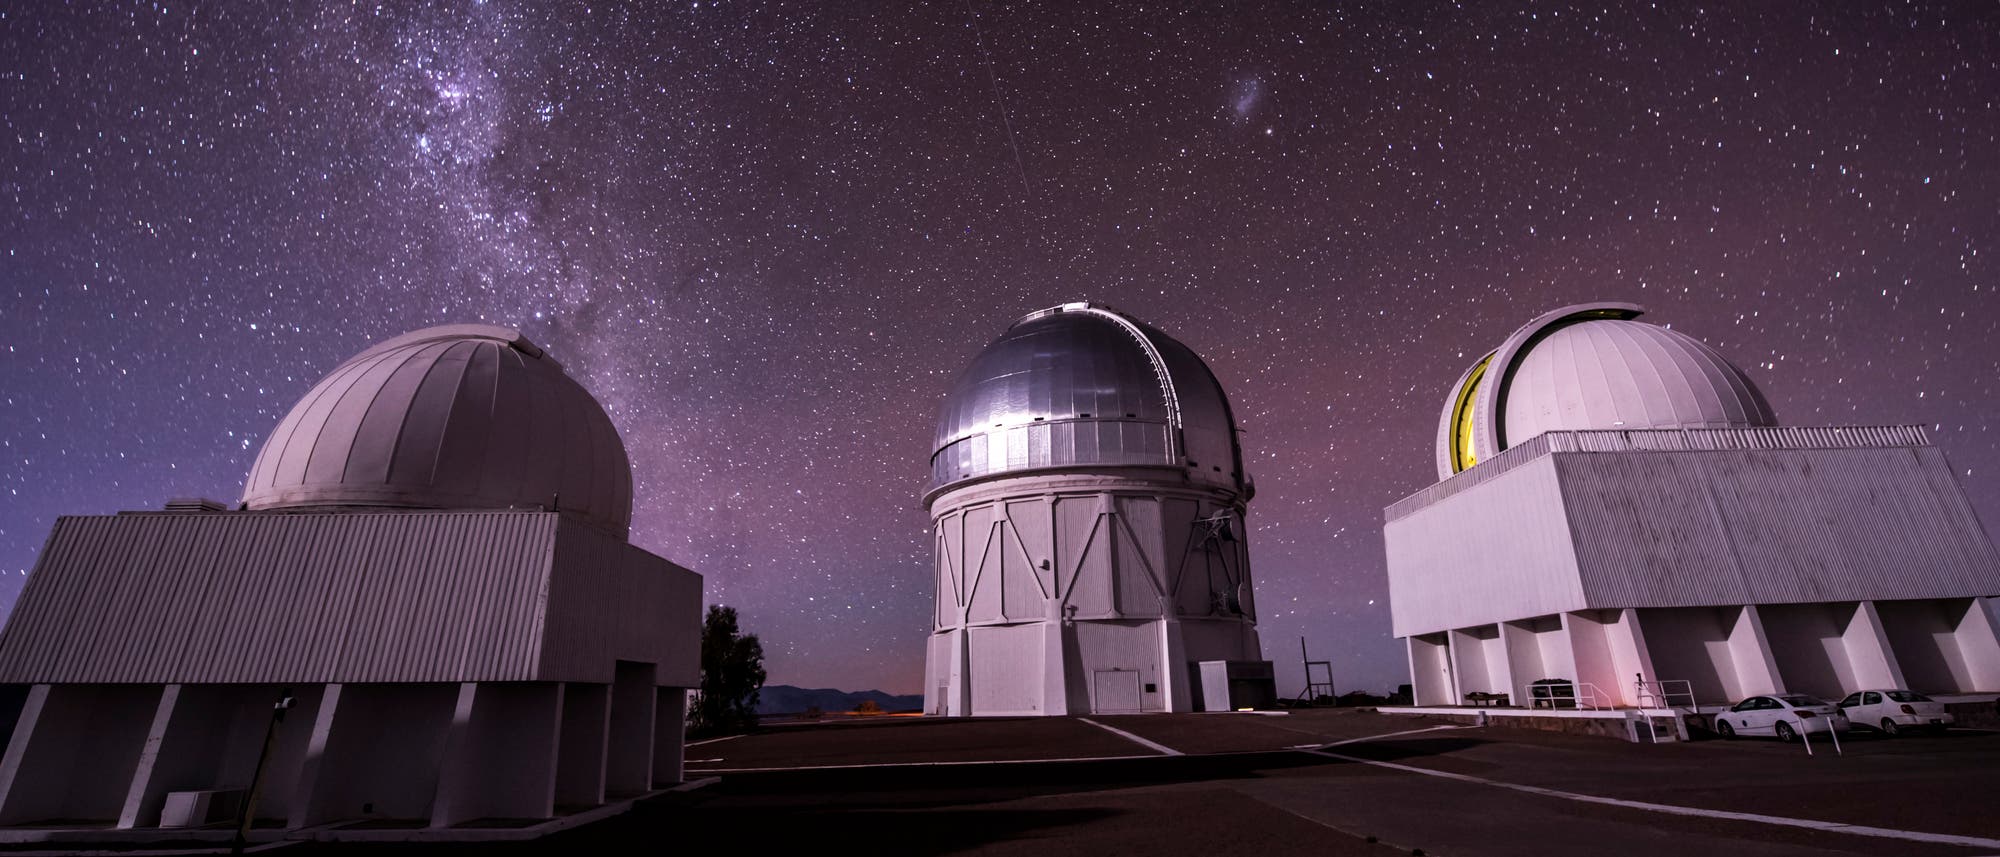 Cerro Tololo Observatorium, Chile